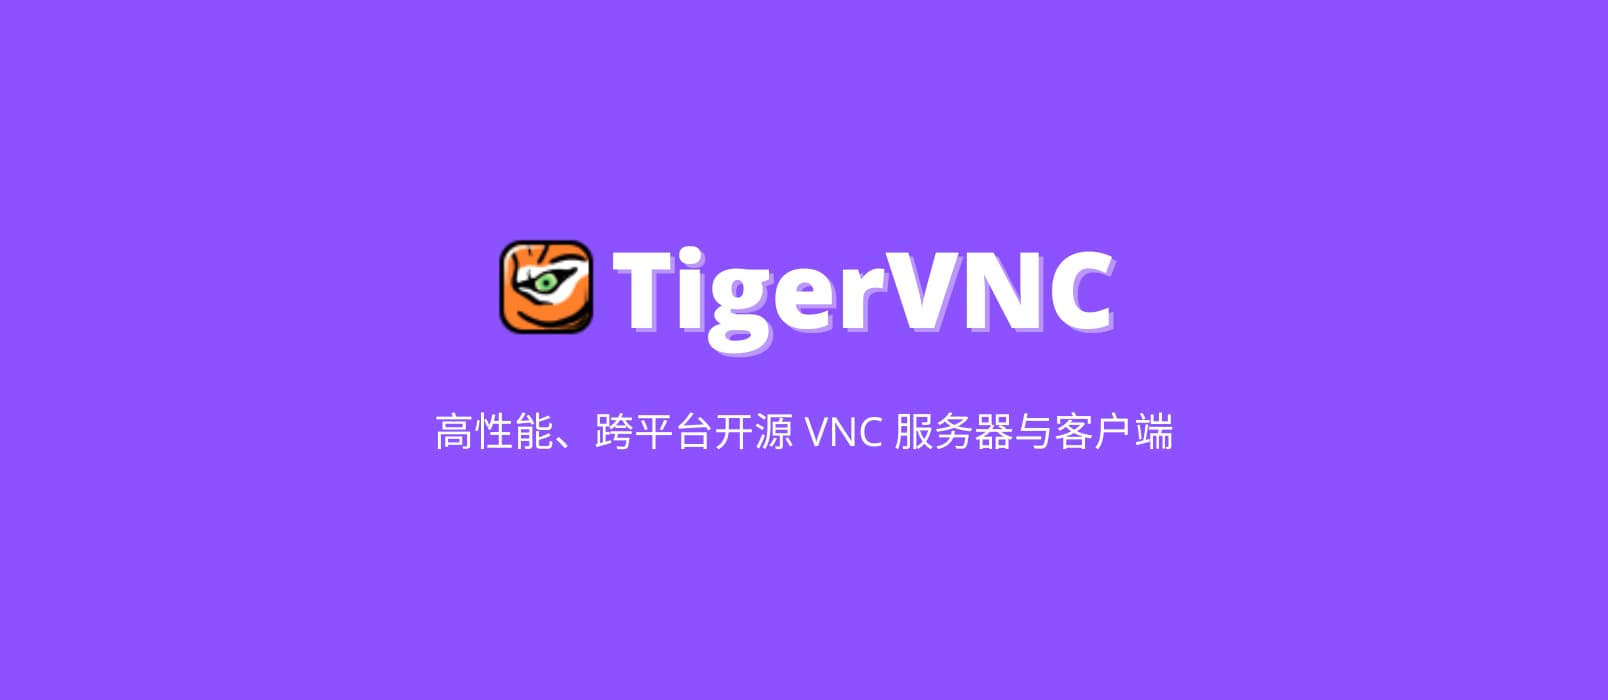 TigerVNC - 高性能、跨平台开源 VNC 服务器与客户端